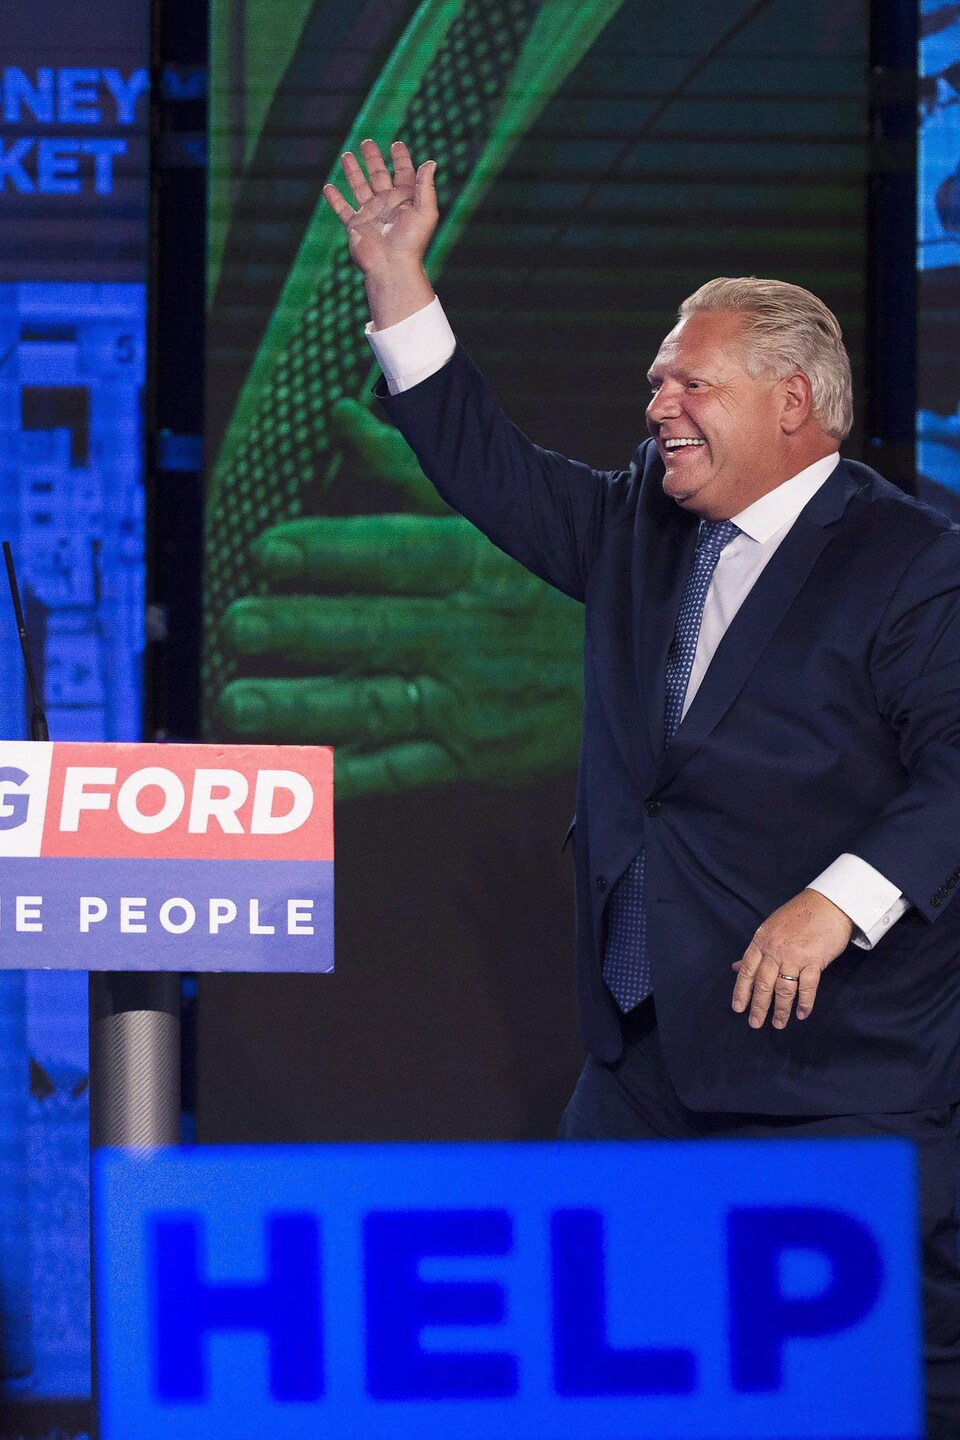 Doug Ford fait sont entré lors de son discours de victoire suite à l'élection de 2018.